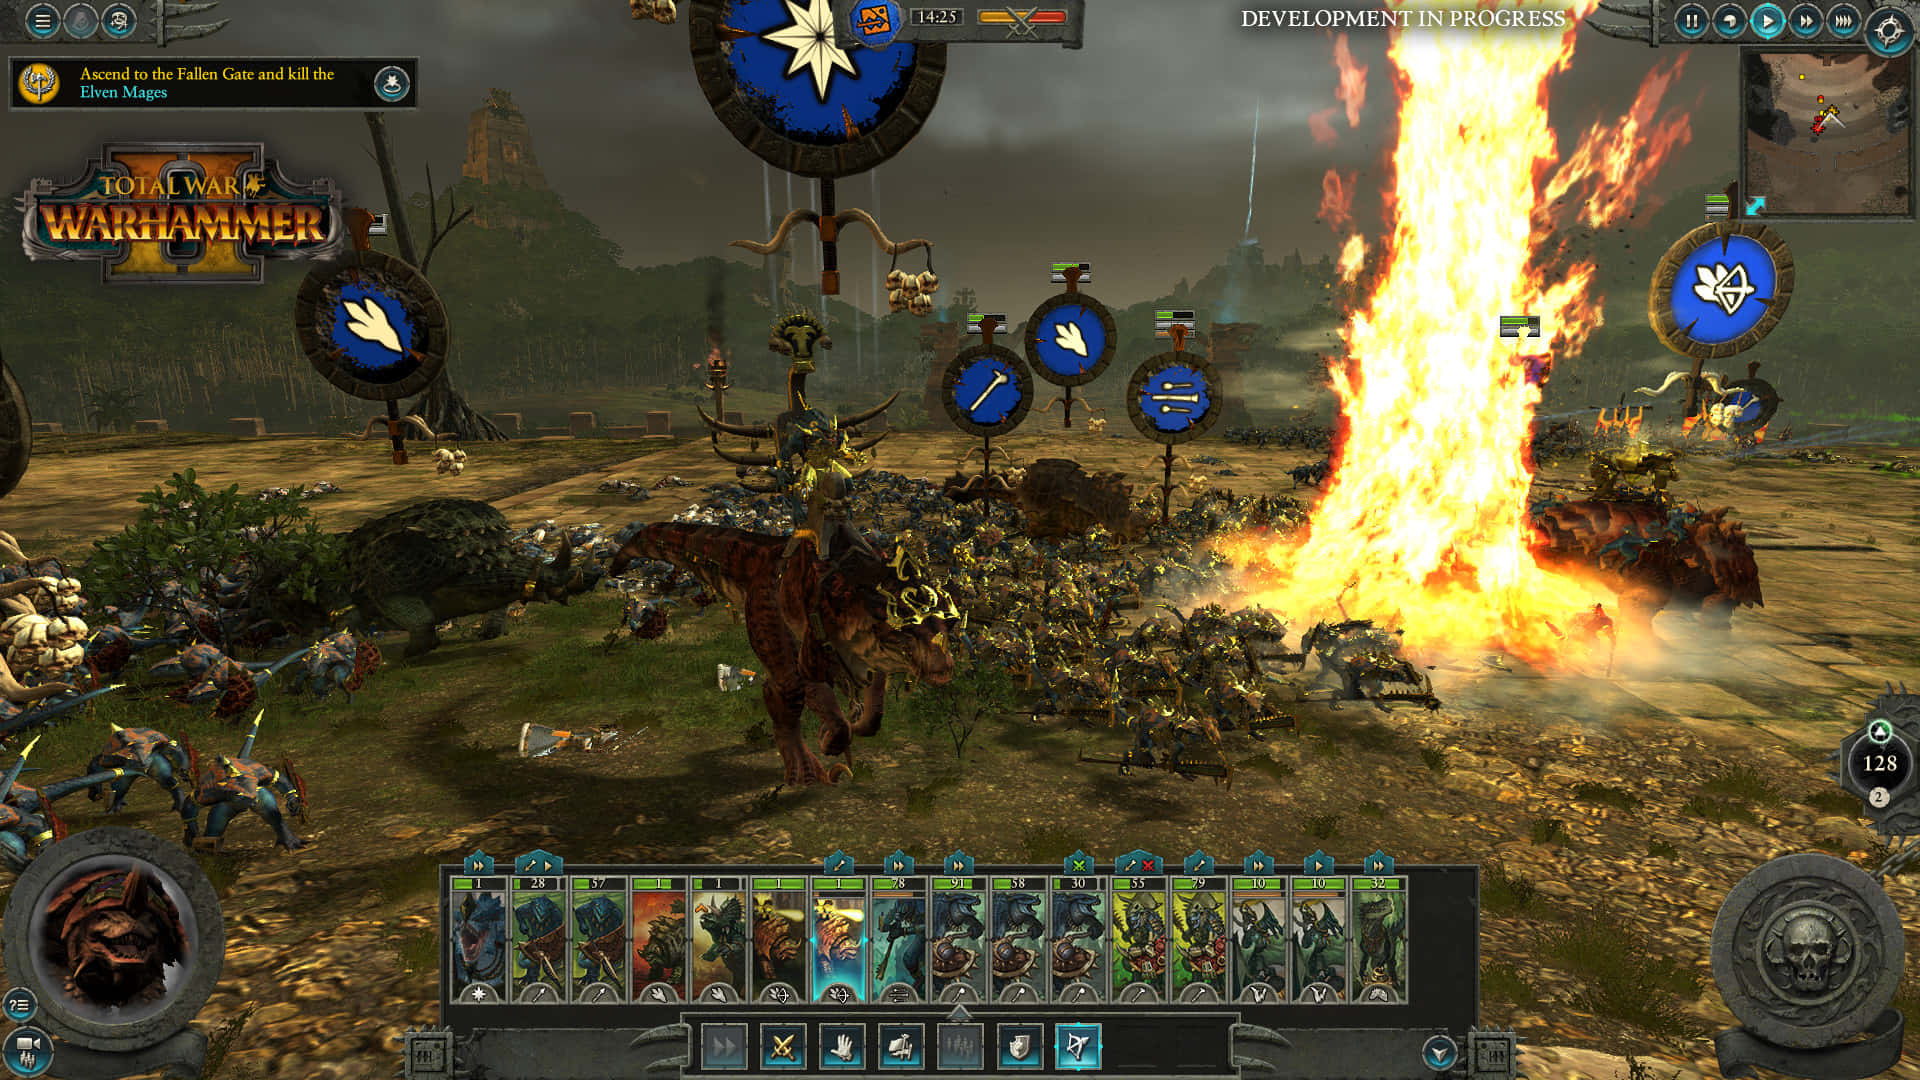 Vaiin Guerra In Total War: Warhammer Ii